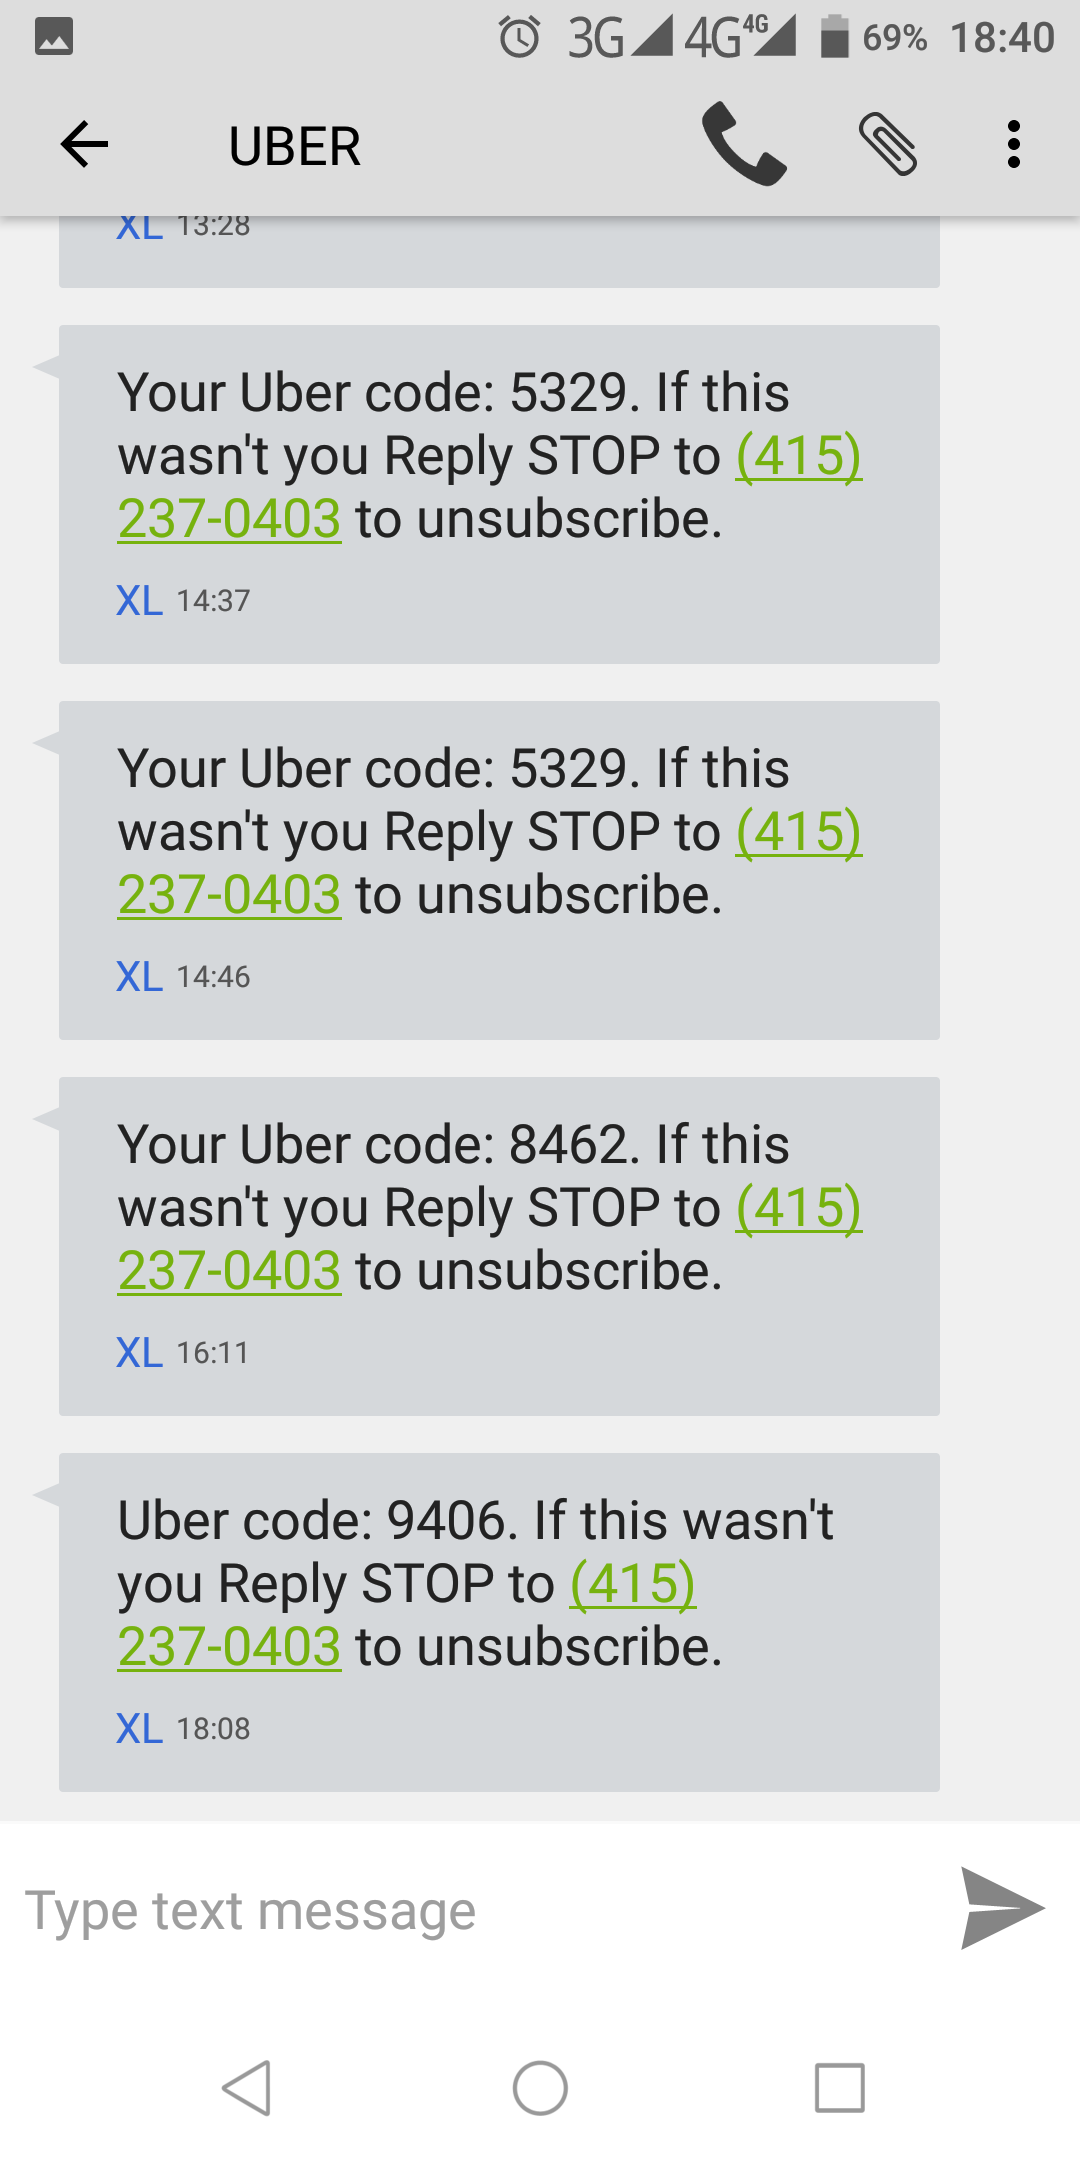 Cara menghentikan sms spam dari uber yang sangat mengganggu